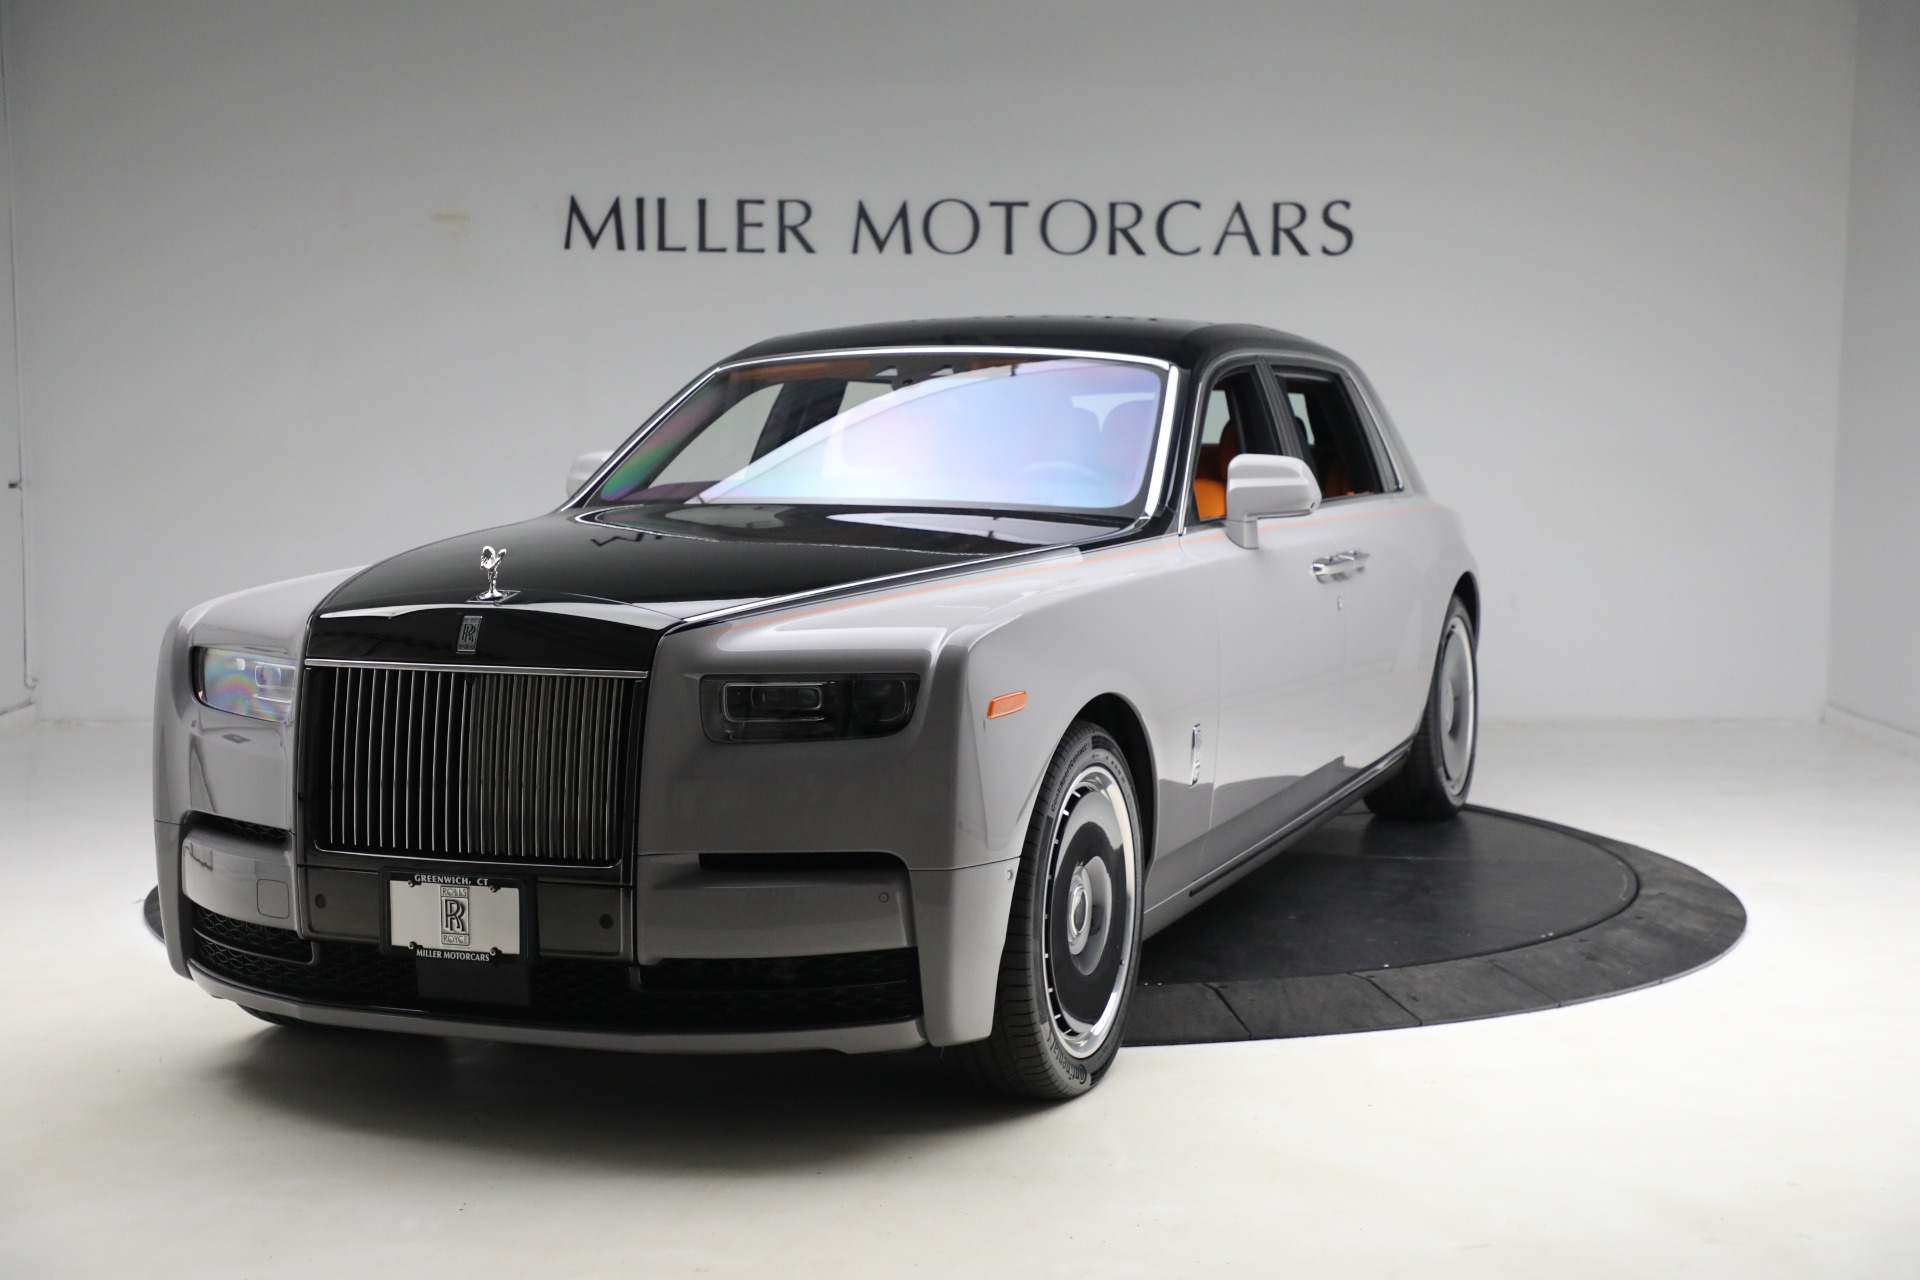 New 2023 RollsRoyce Phantom EWB For Sale   Miller Motorcars Stock R708